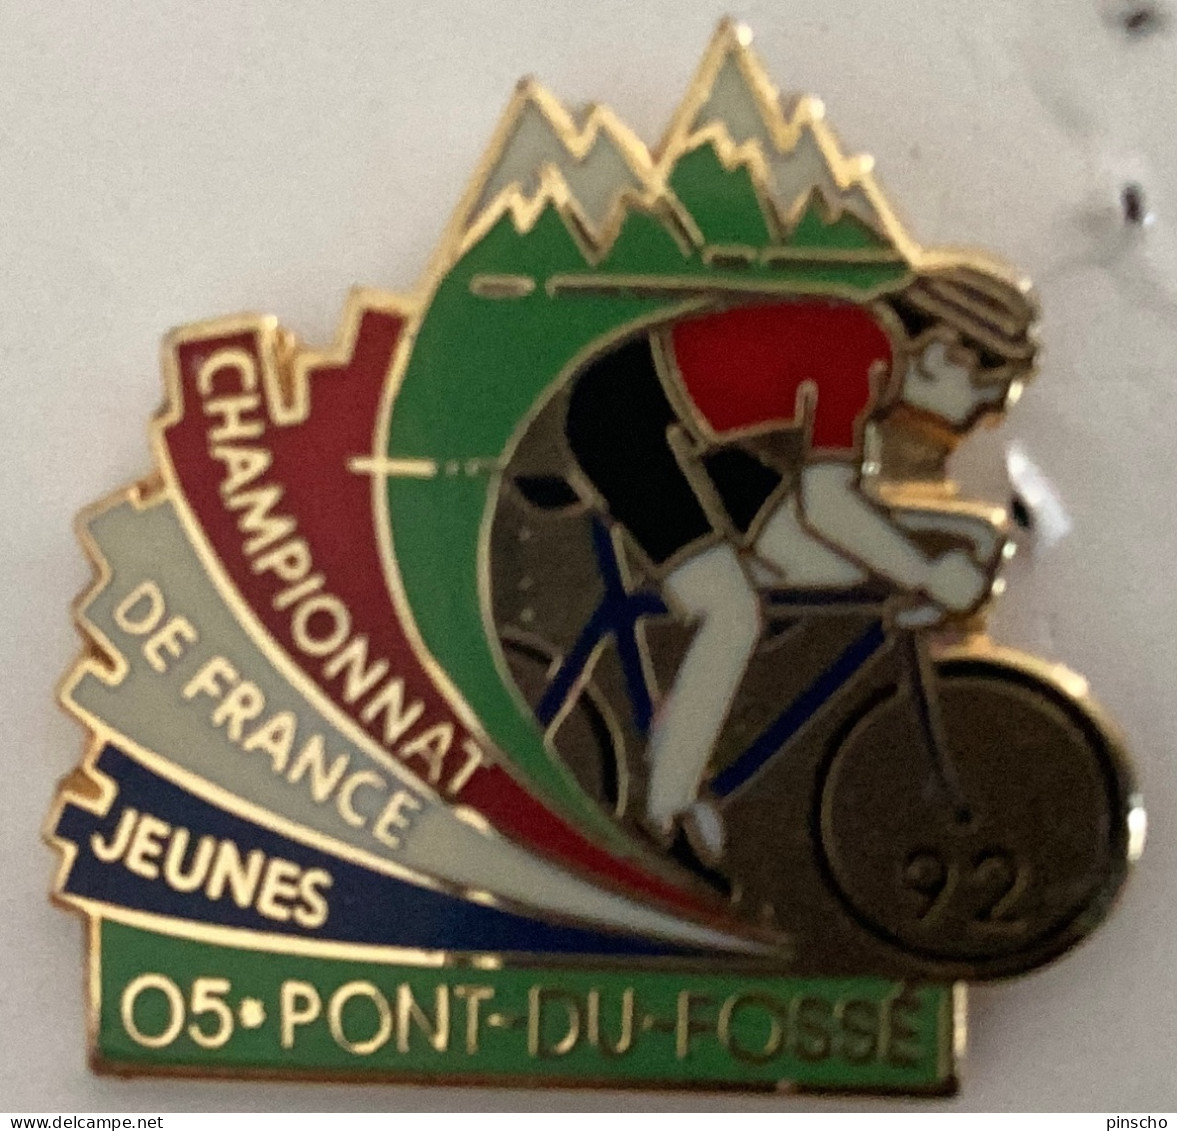 Pin S CHAMPIONNAT DE FRANCEJEUNES 92 - Cycling